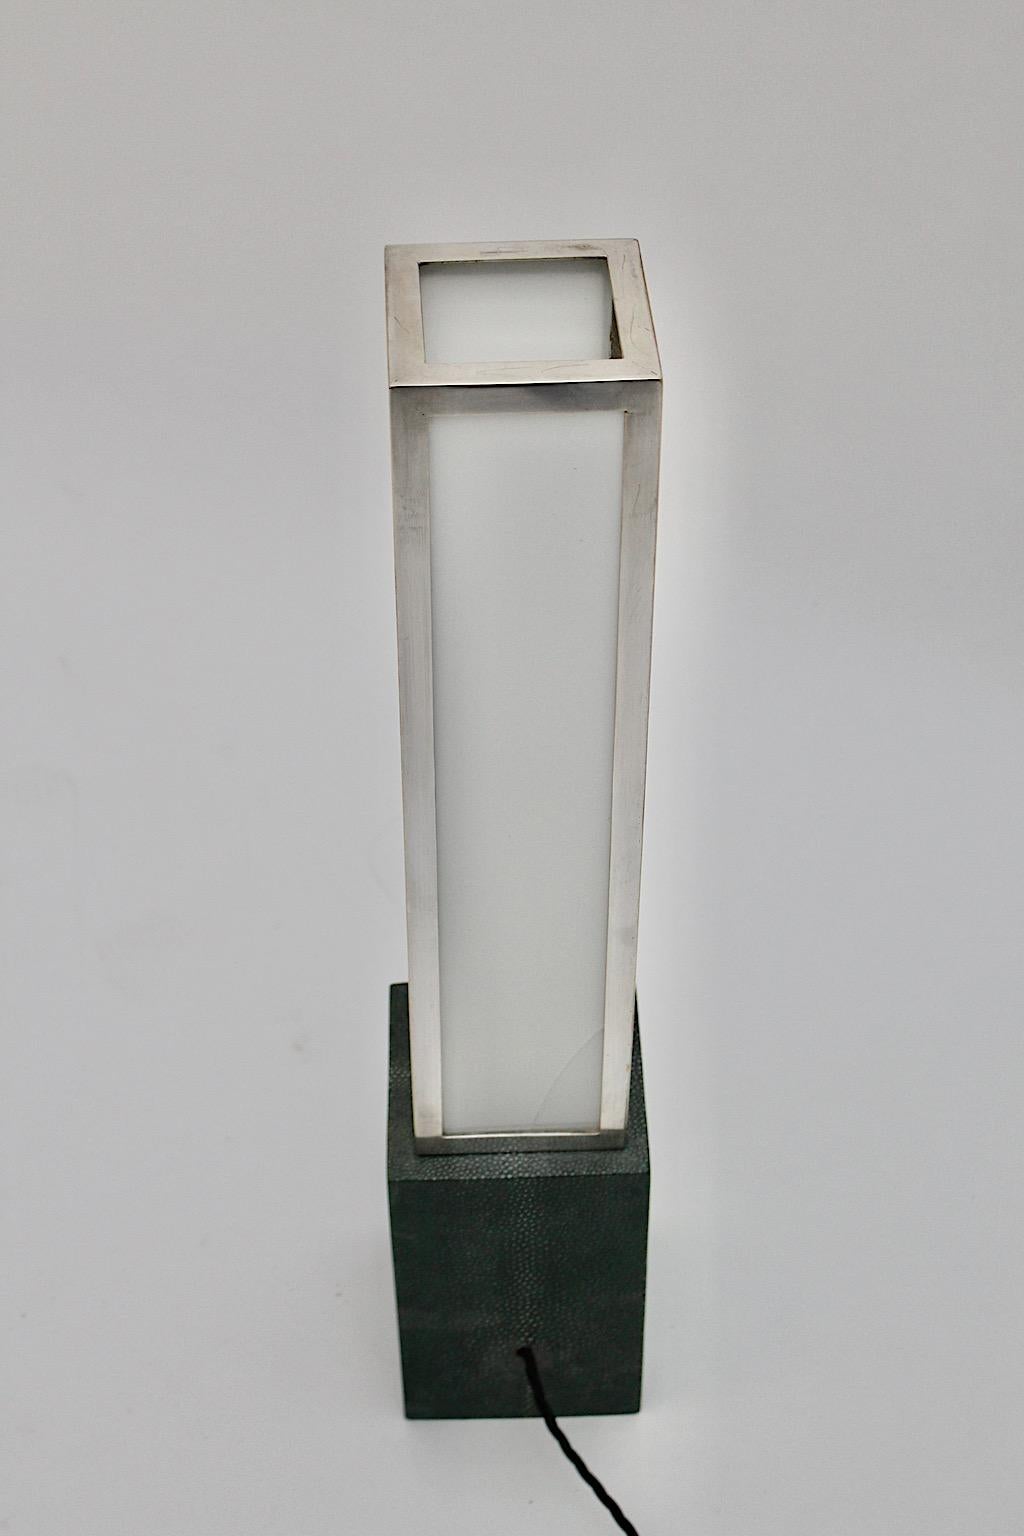 Art Deco Vintage Tischlampe geometrisch aus Plexiglas, vernickeltem Messing und Leder im Stil von Eckart Muthesius 1920er Jahre Deutschland.
Eine wunderbare Art Deco Tischlampe mit einem rechteckigen Sockel aus grünem Leder, während der Lampenschirm